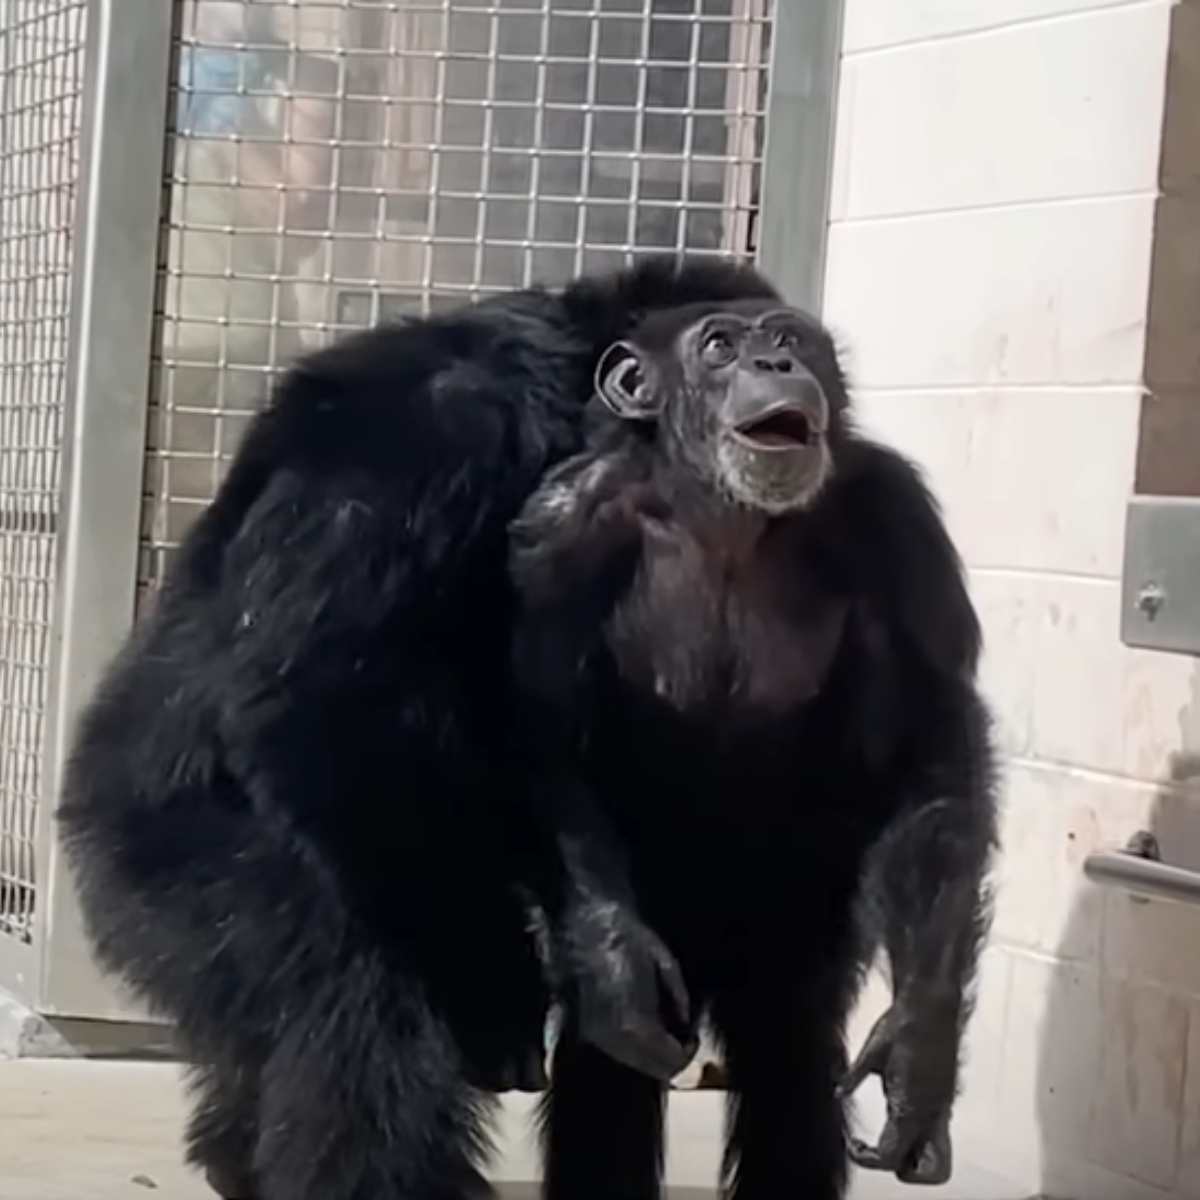  VÍDEO: Chimpanzé de 29 anos vê céu pela primeira vez e reage surpreso 